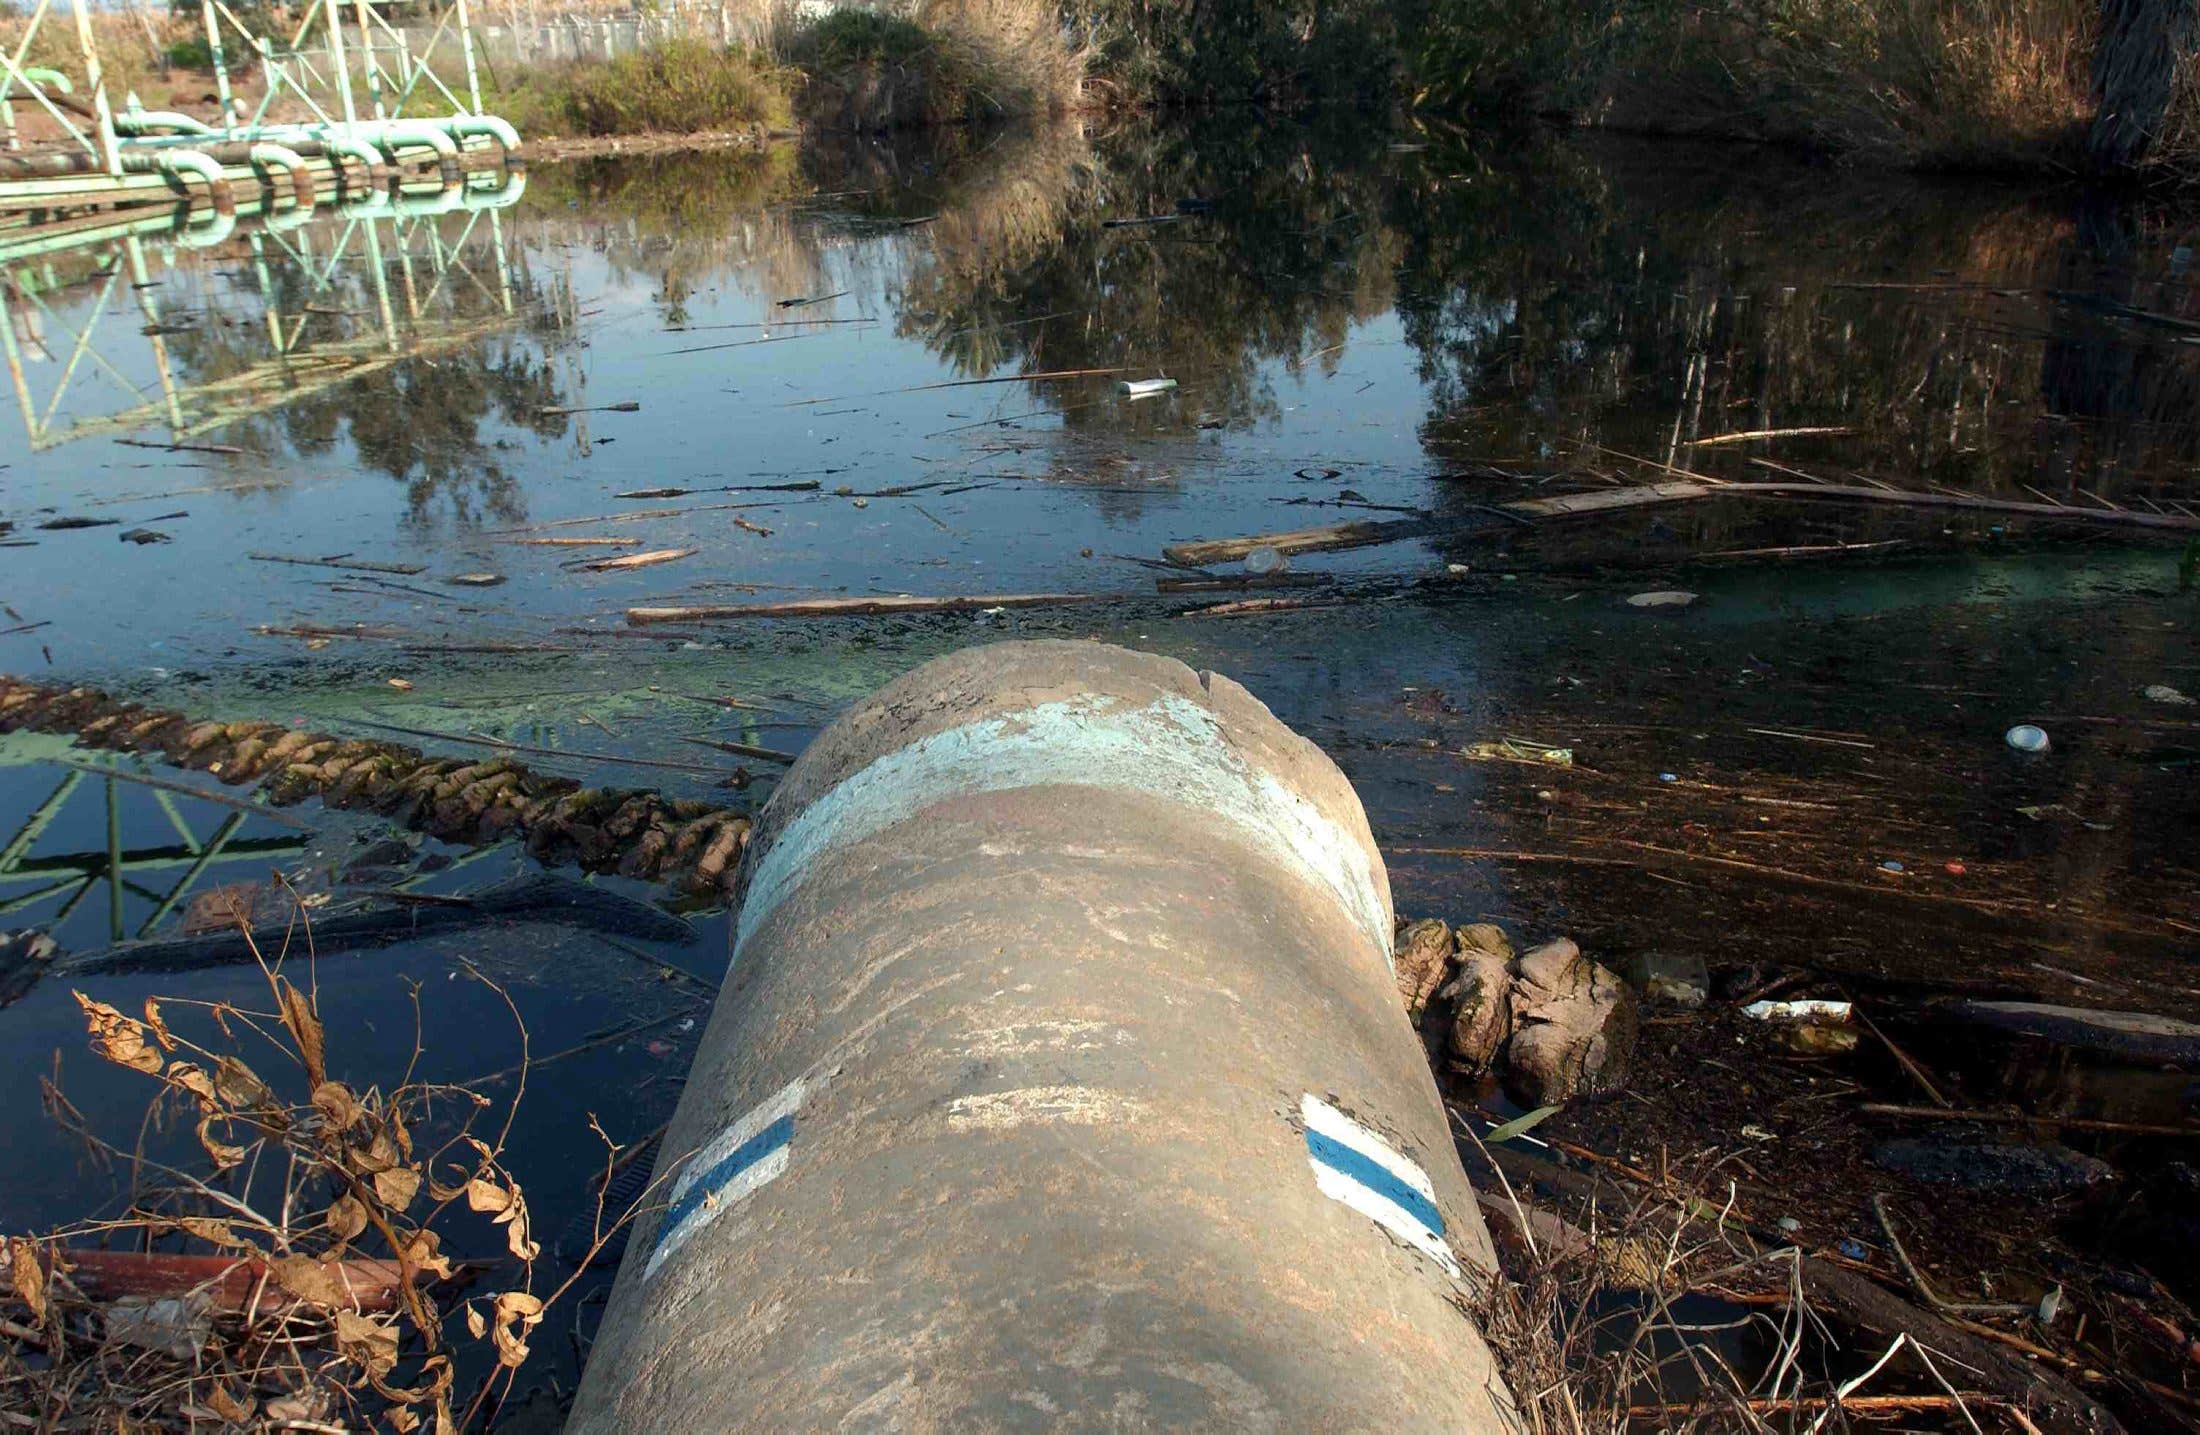 Israel, Jordan taking steps to clean up Jordan River water - Haaretz Com -  Haaretz.com